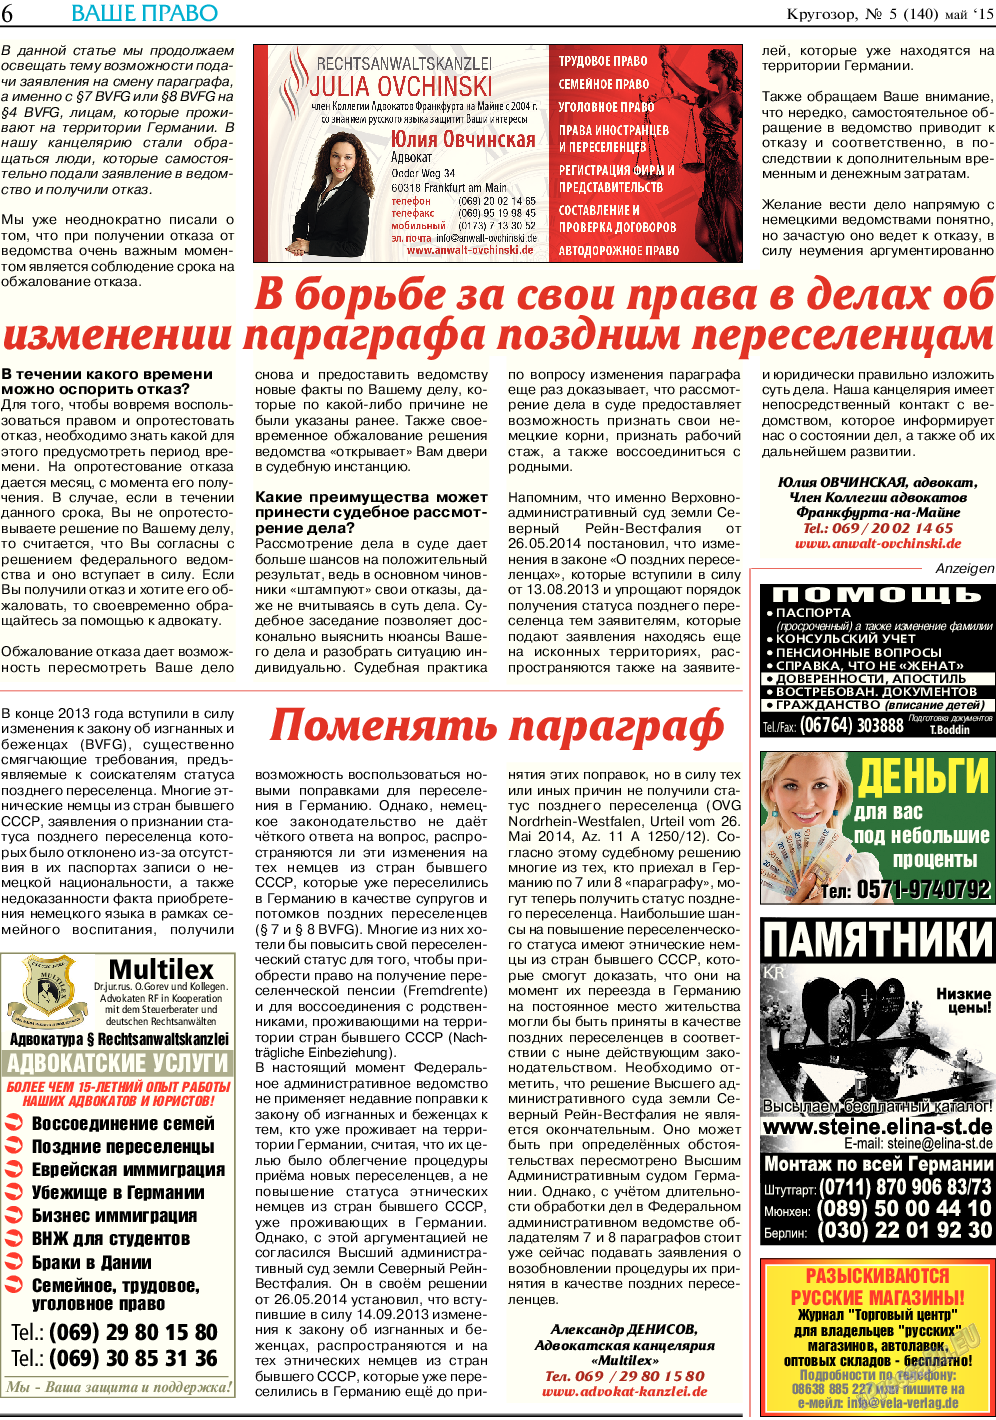 Кругозор, газета. 2015 №5 стр.6